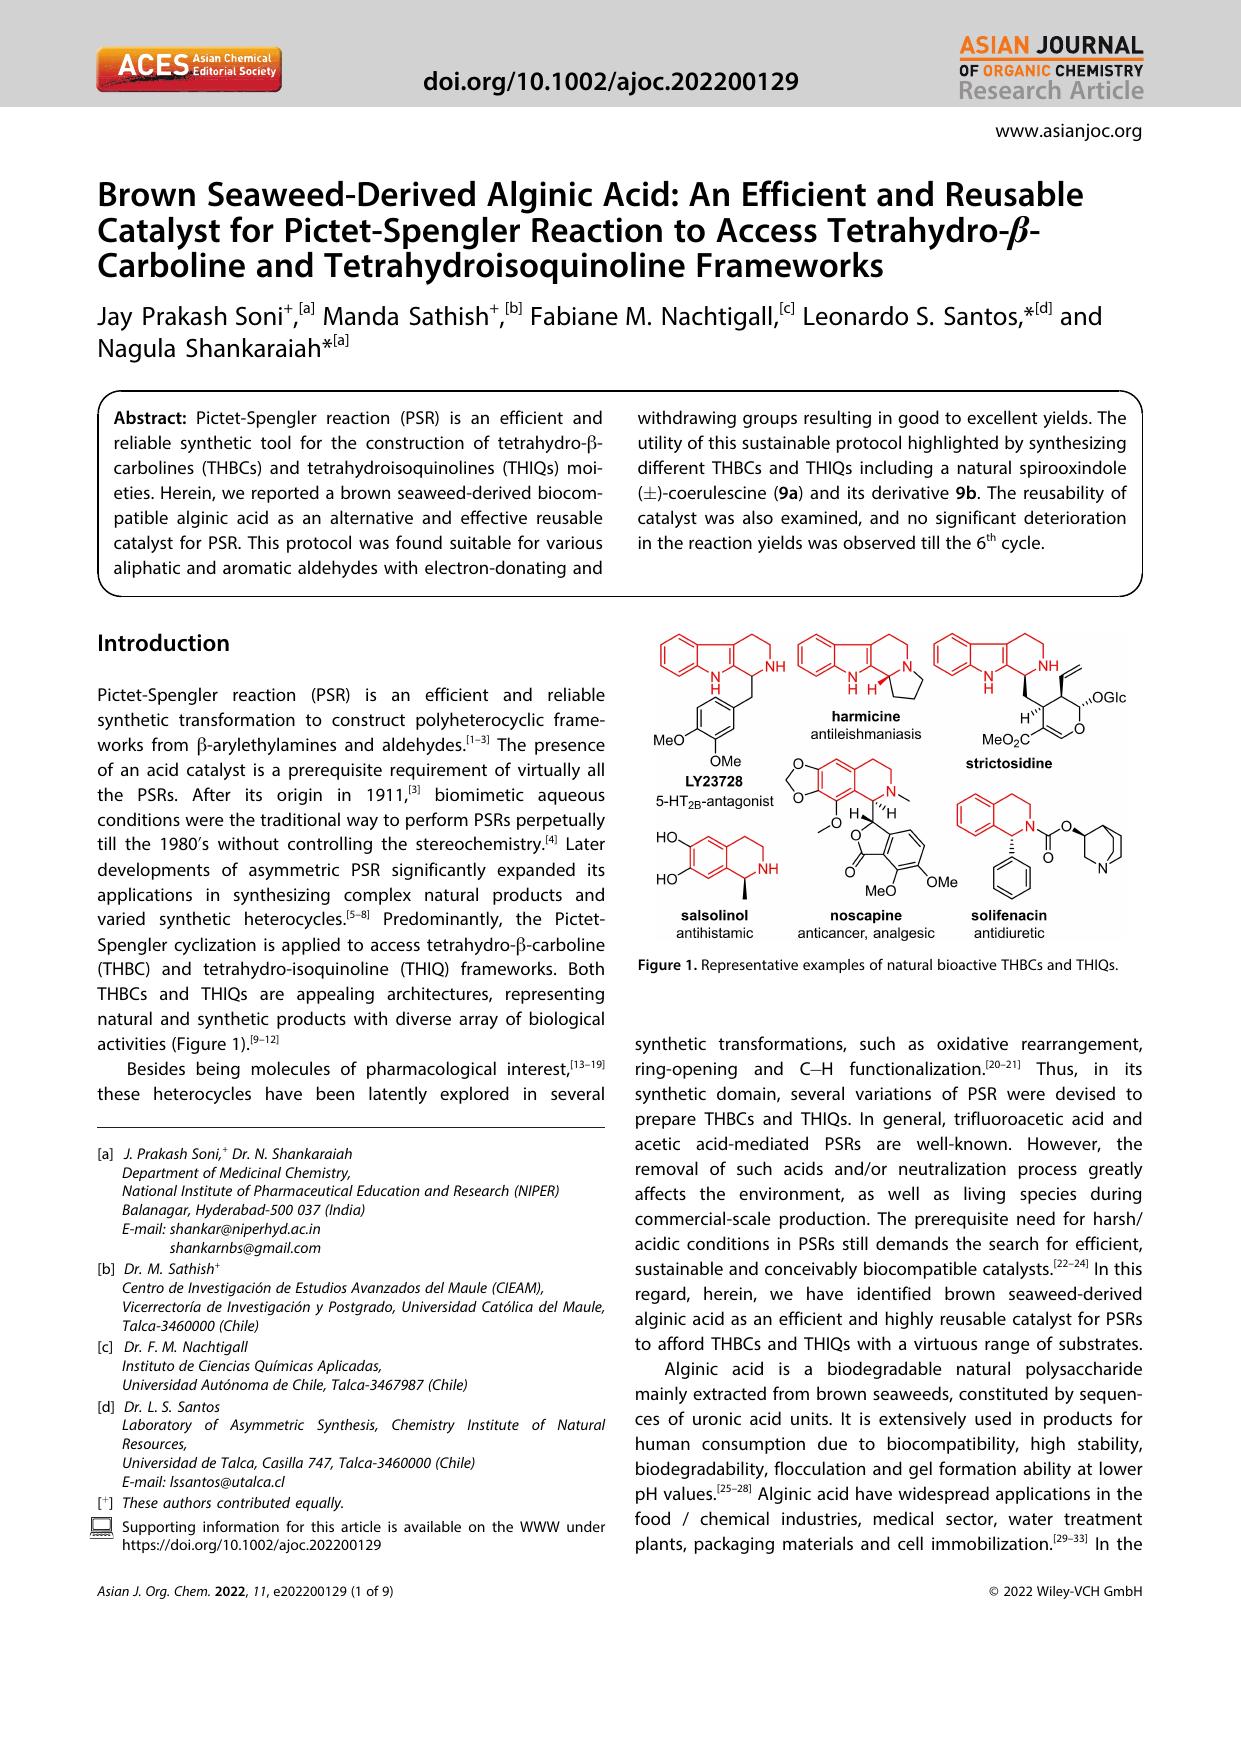 Brown SeaweedâDerived Alginic Acid: An Efficient and Reusable Catalyst for PictetâSpengler Reaction to Access TetrahydroâÎ²âCarboline and Tetrahydroisoquinoline Frameworks by Unknown